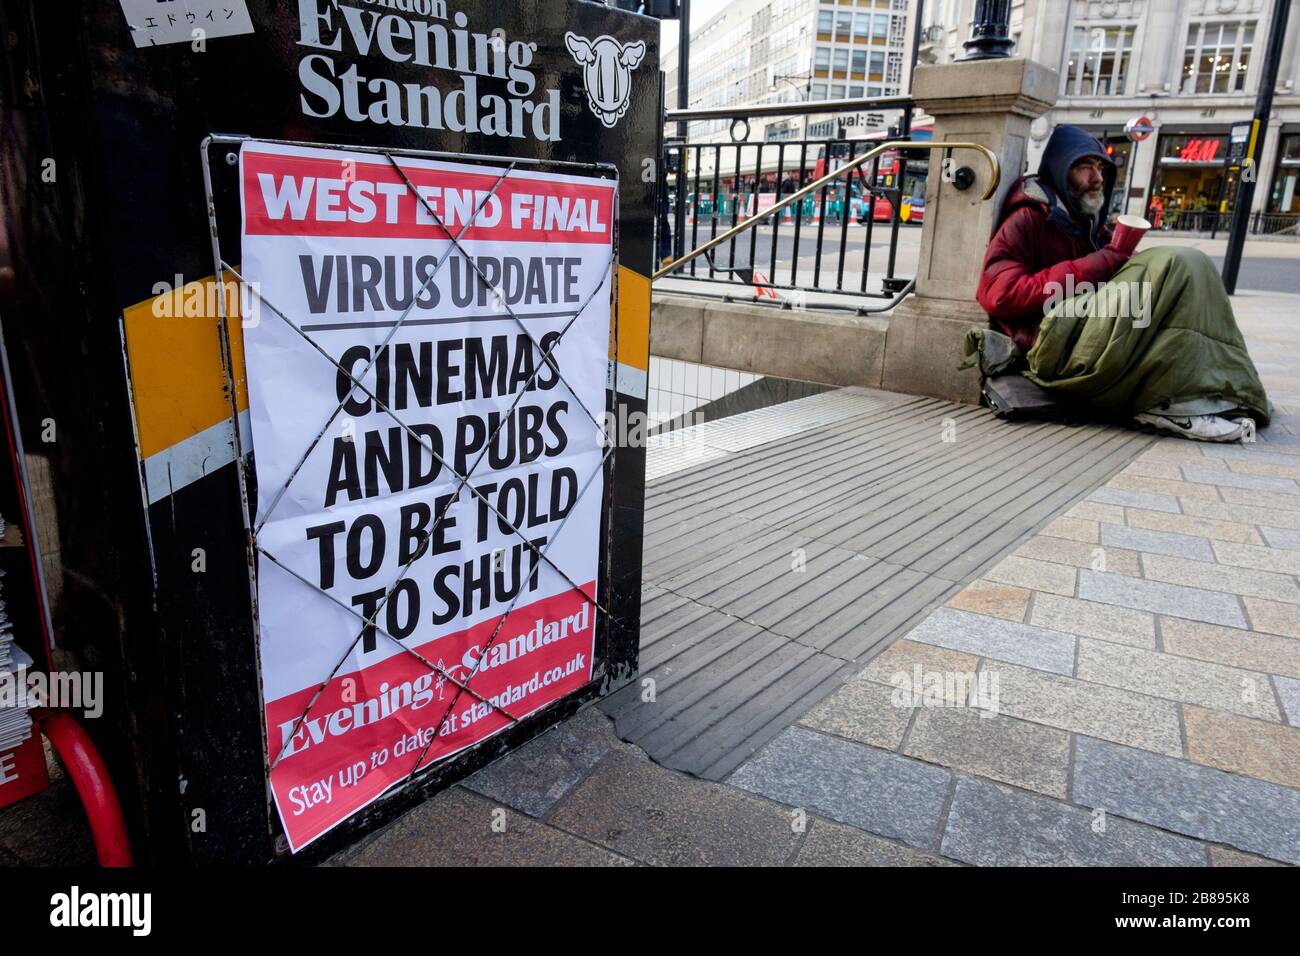 Londra, Regno Unito. 20 marzo 2020. I titoli degli stand di Oxford Circus annunciano la chiusura dei pub da parte del governo britannico. Foto Stock